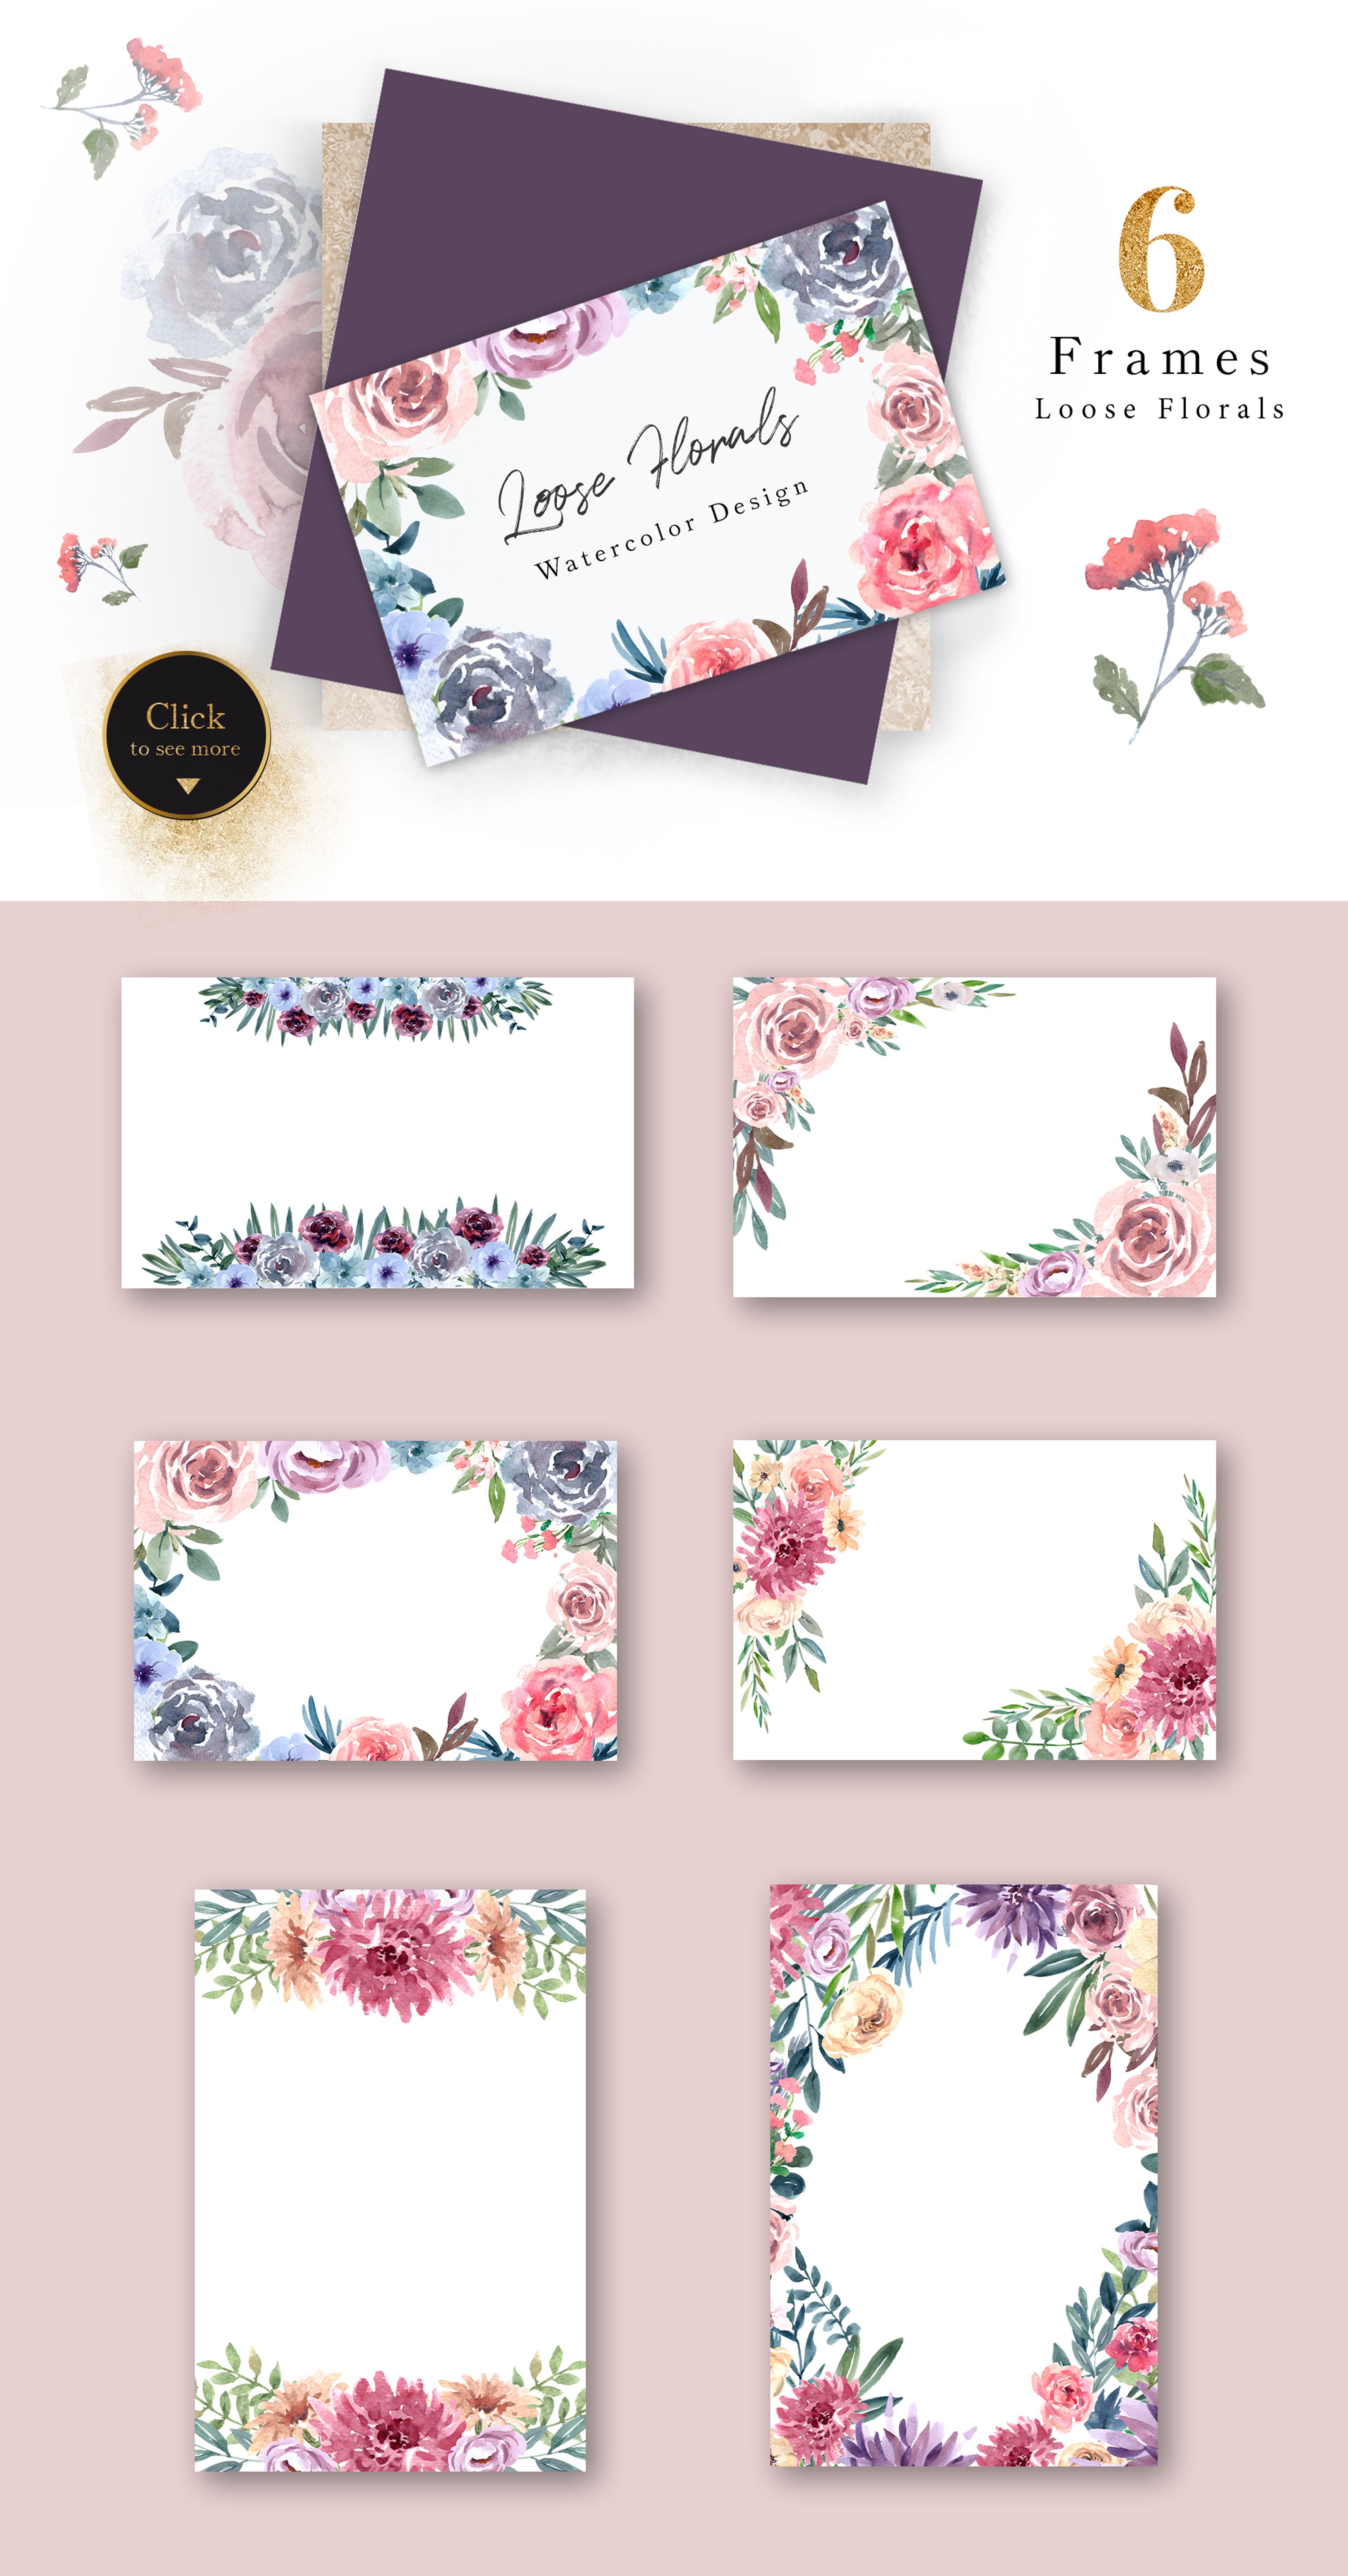 Pale & Mauve Loose Florals Watercolor Set